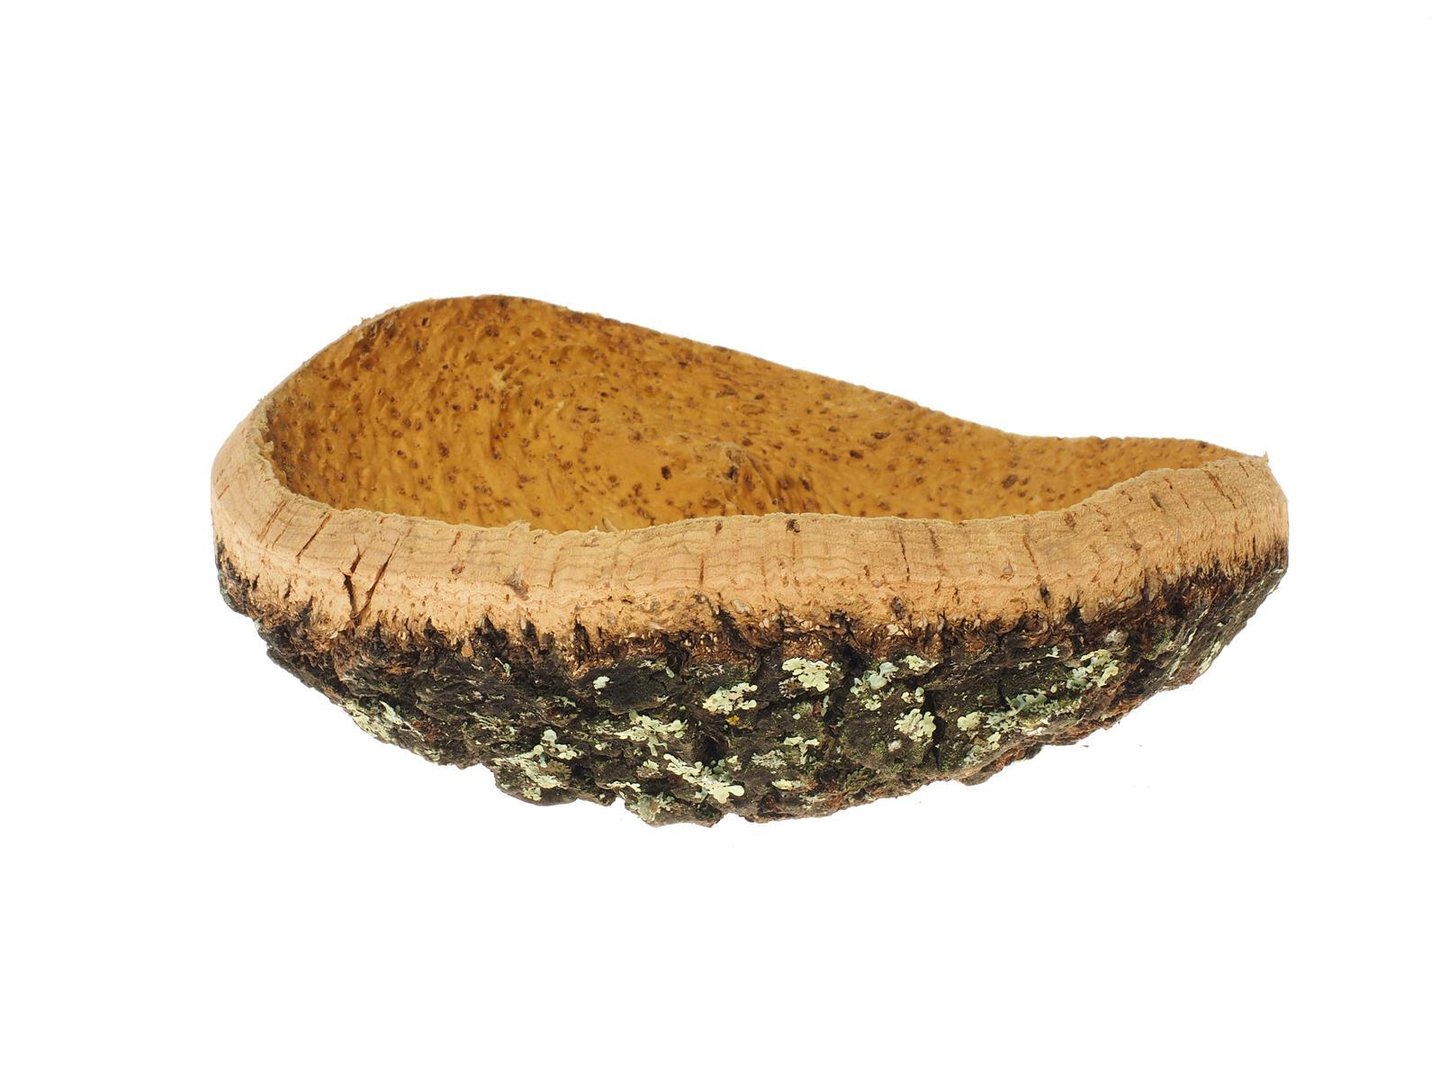 7320.3 5 3 Small cork bowl Natural cork bowl